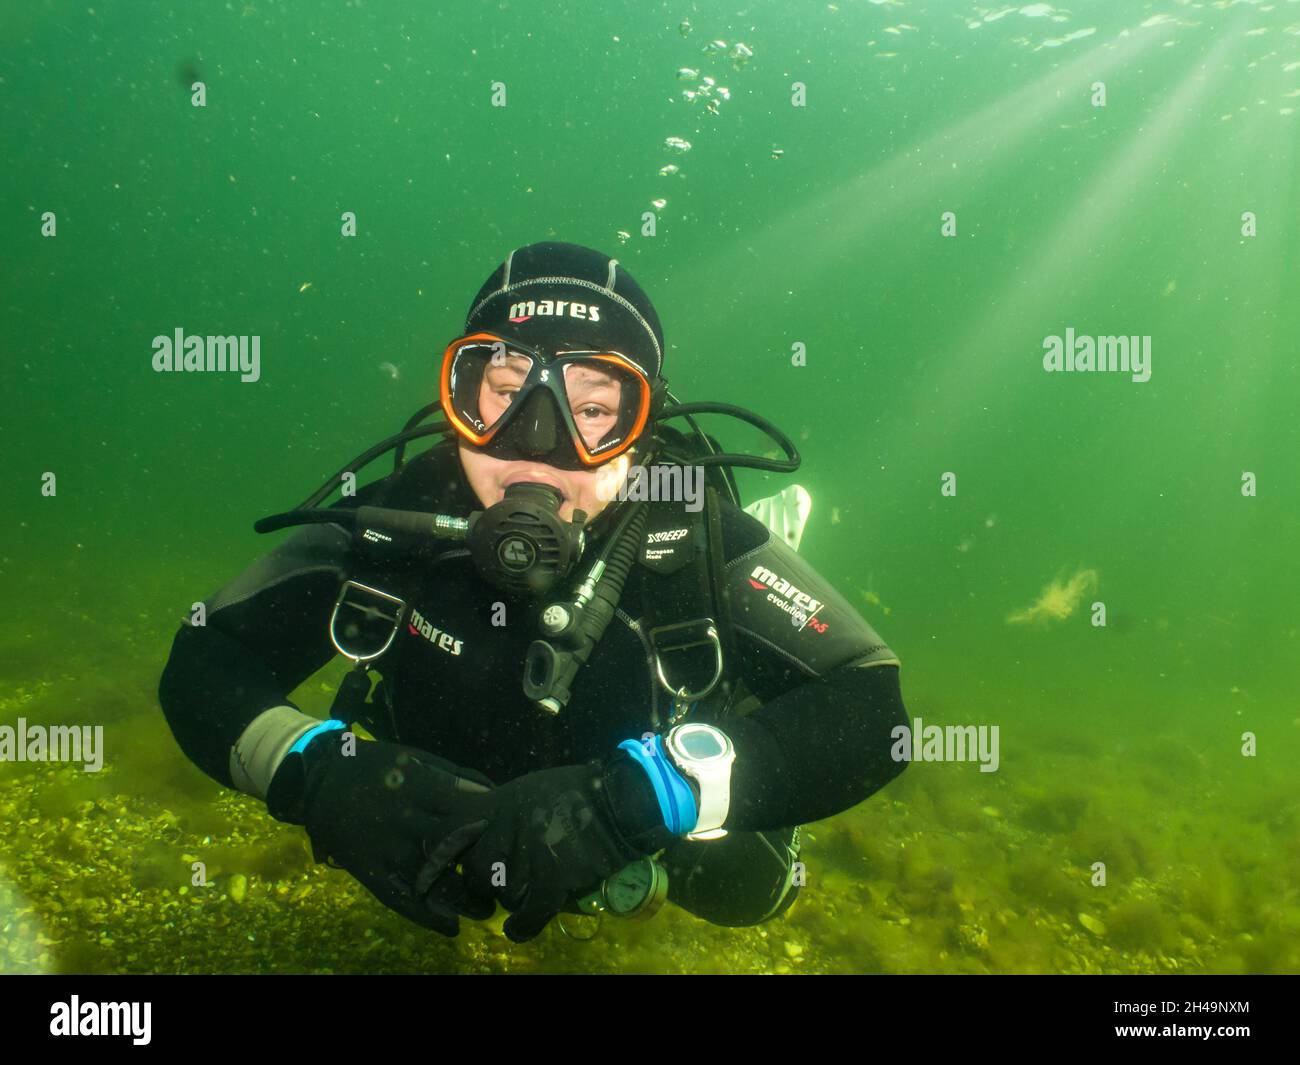 5 septembre 2021 - Malmo, Suède: Une femelle plongée sous-marine éclairée par les rayons du soleil pénétrant dans l'eau. La plongée sous-marine a été un sport de plus en plus populaire pendant la pandémie du coronavirus Banque D'Images